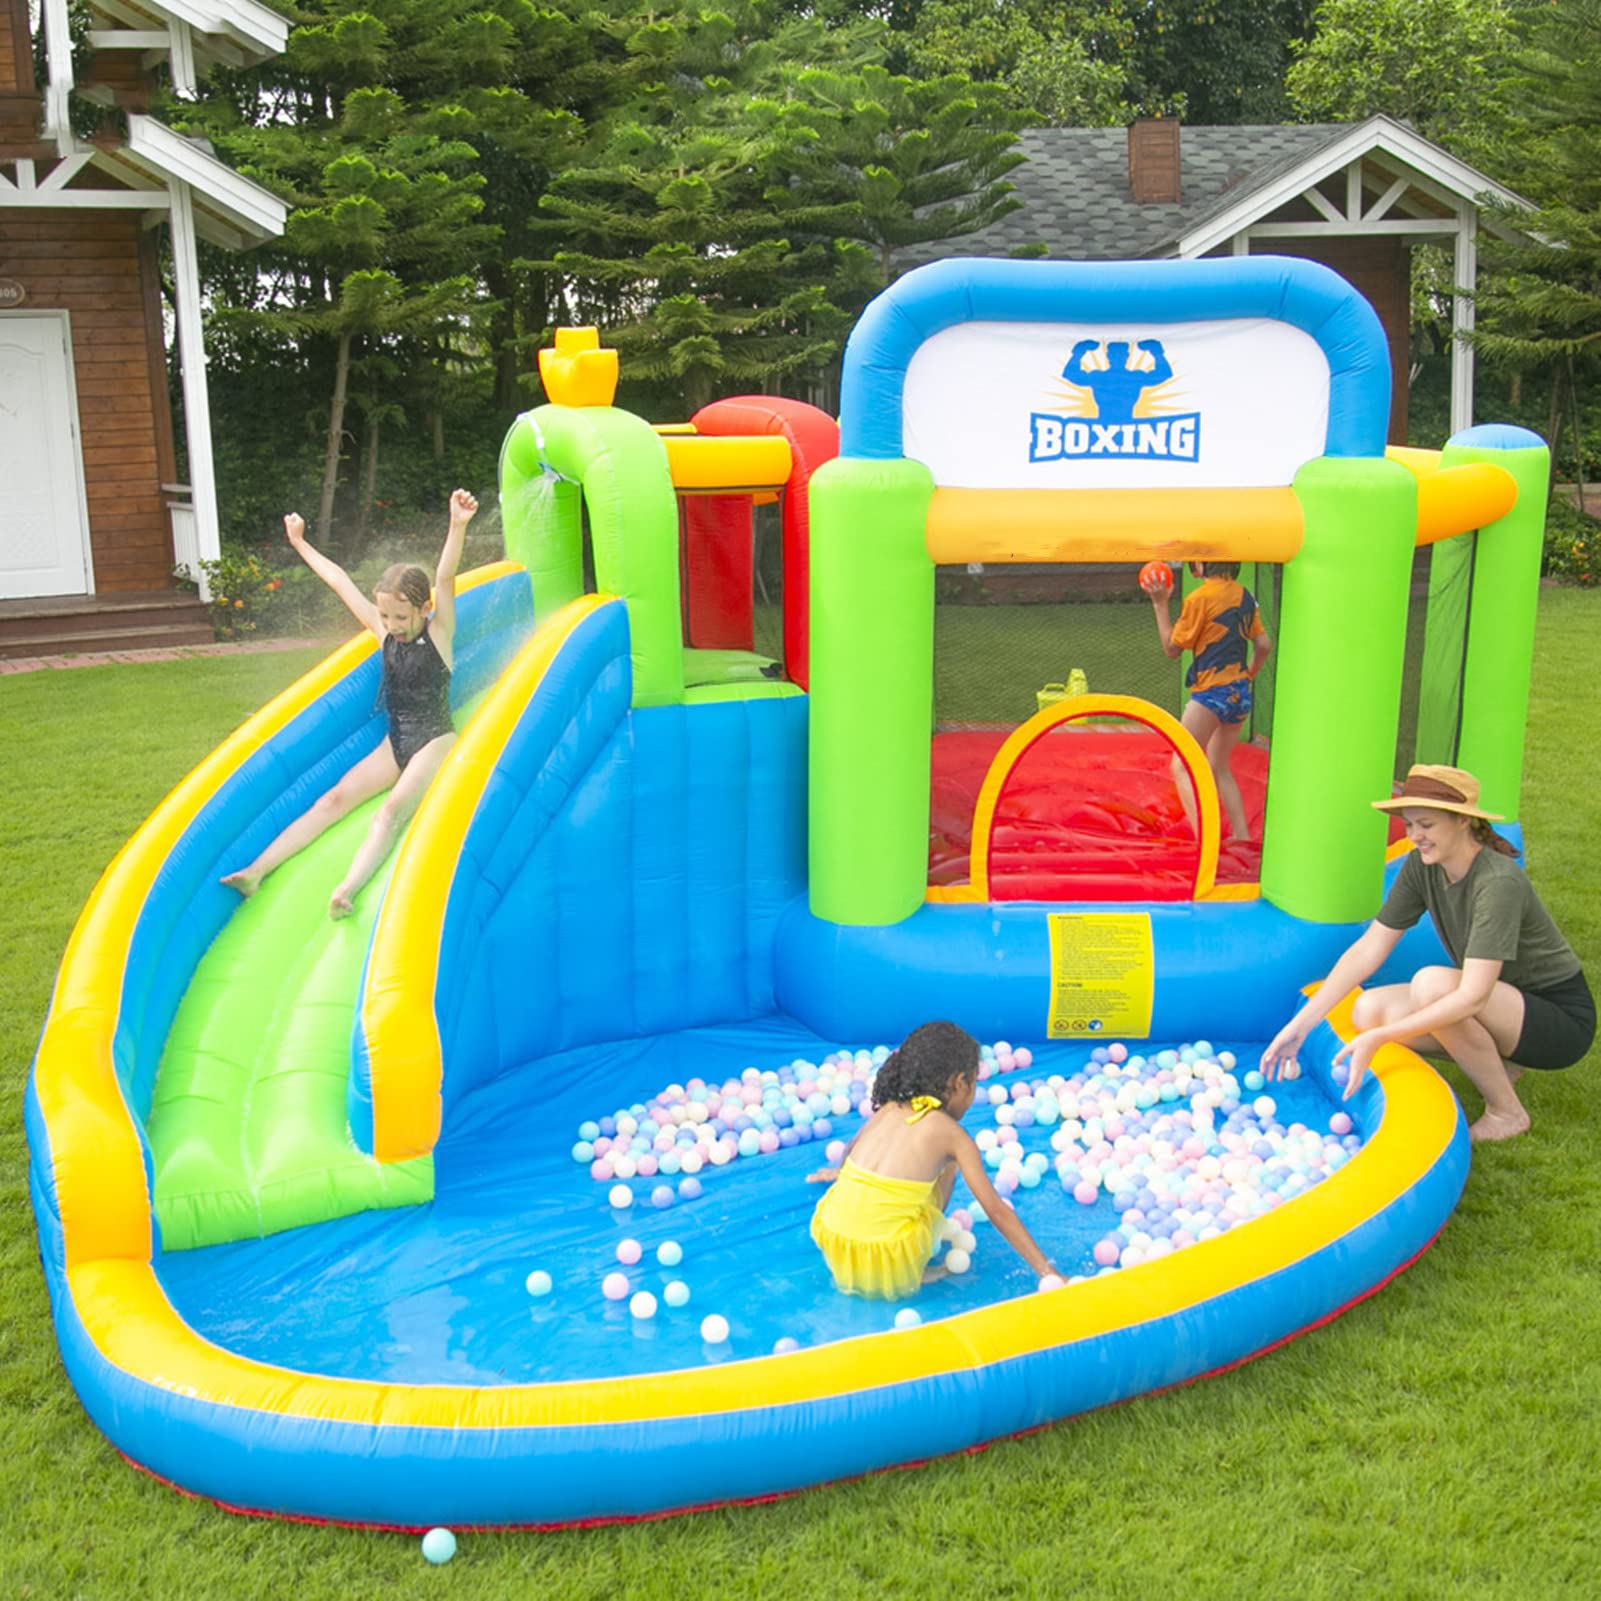 Children's Inflatable Castle Water Slide is Suitable for Indoornd Outdoor Garden Playgrounds